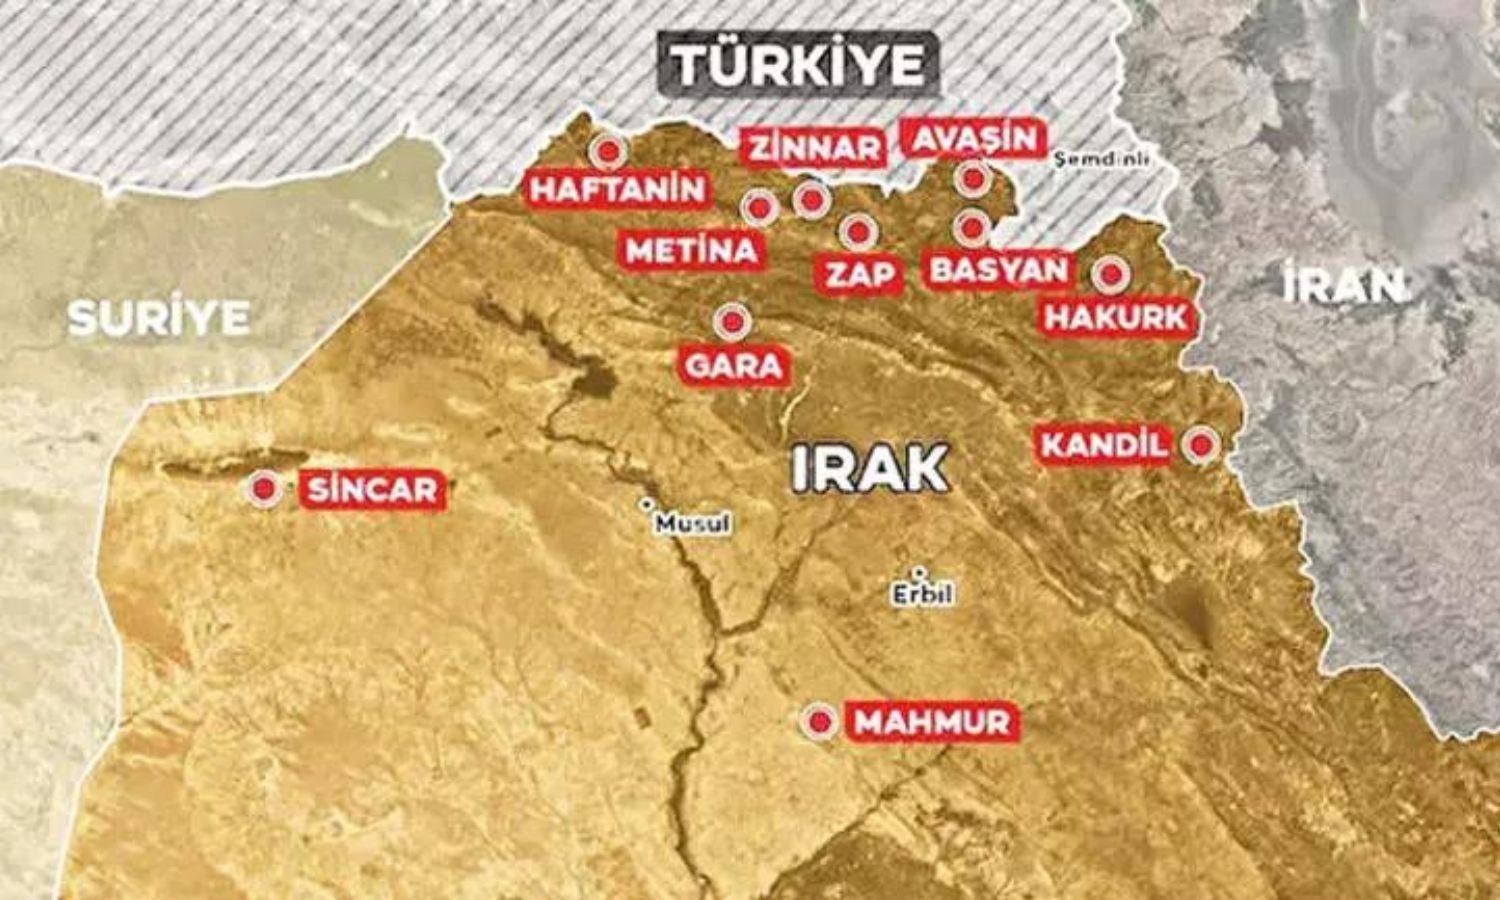 خريطة تظهر أماكن توزع قوات حزب العمال الكردستاني في العراق (حرييت)